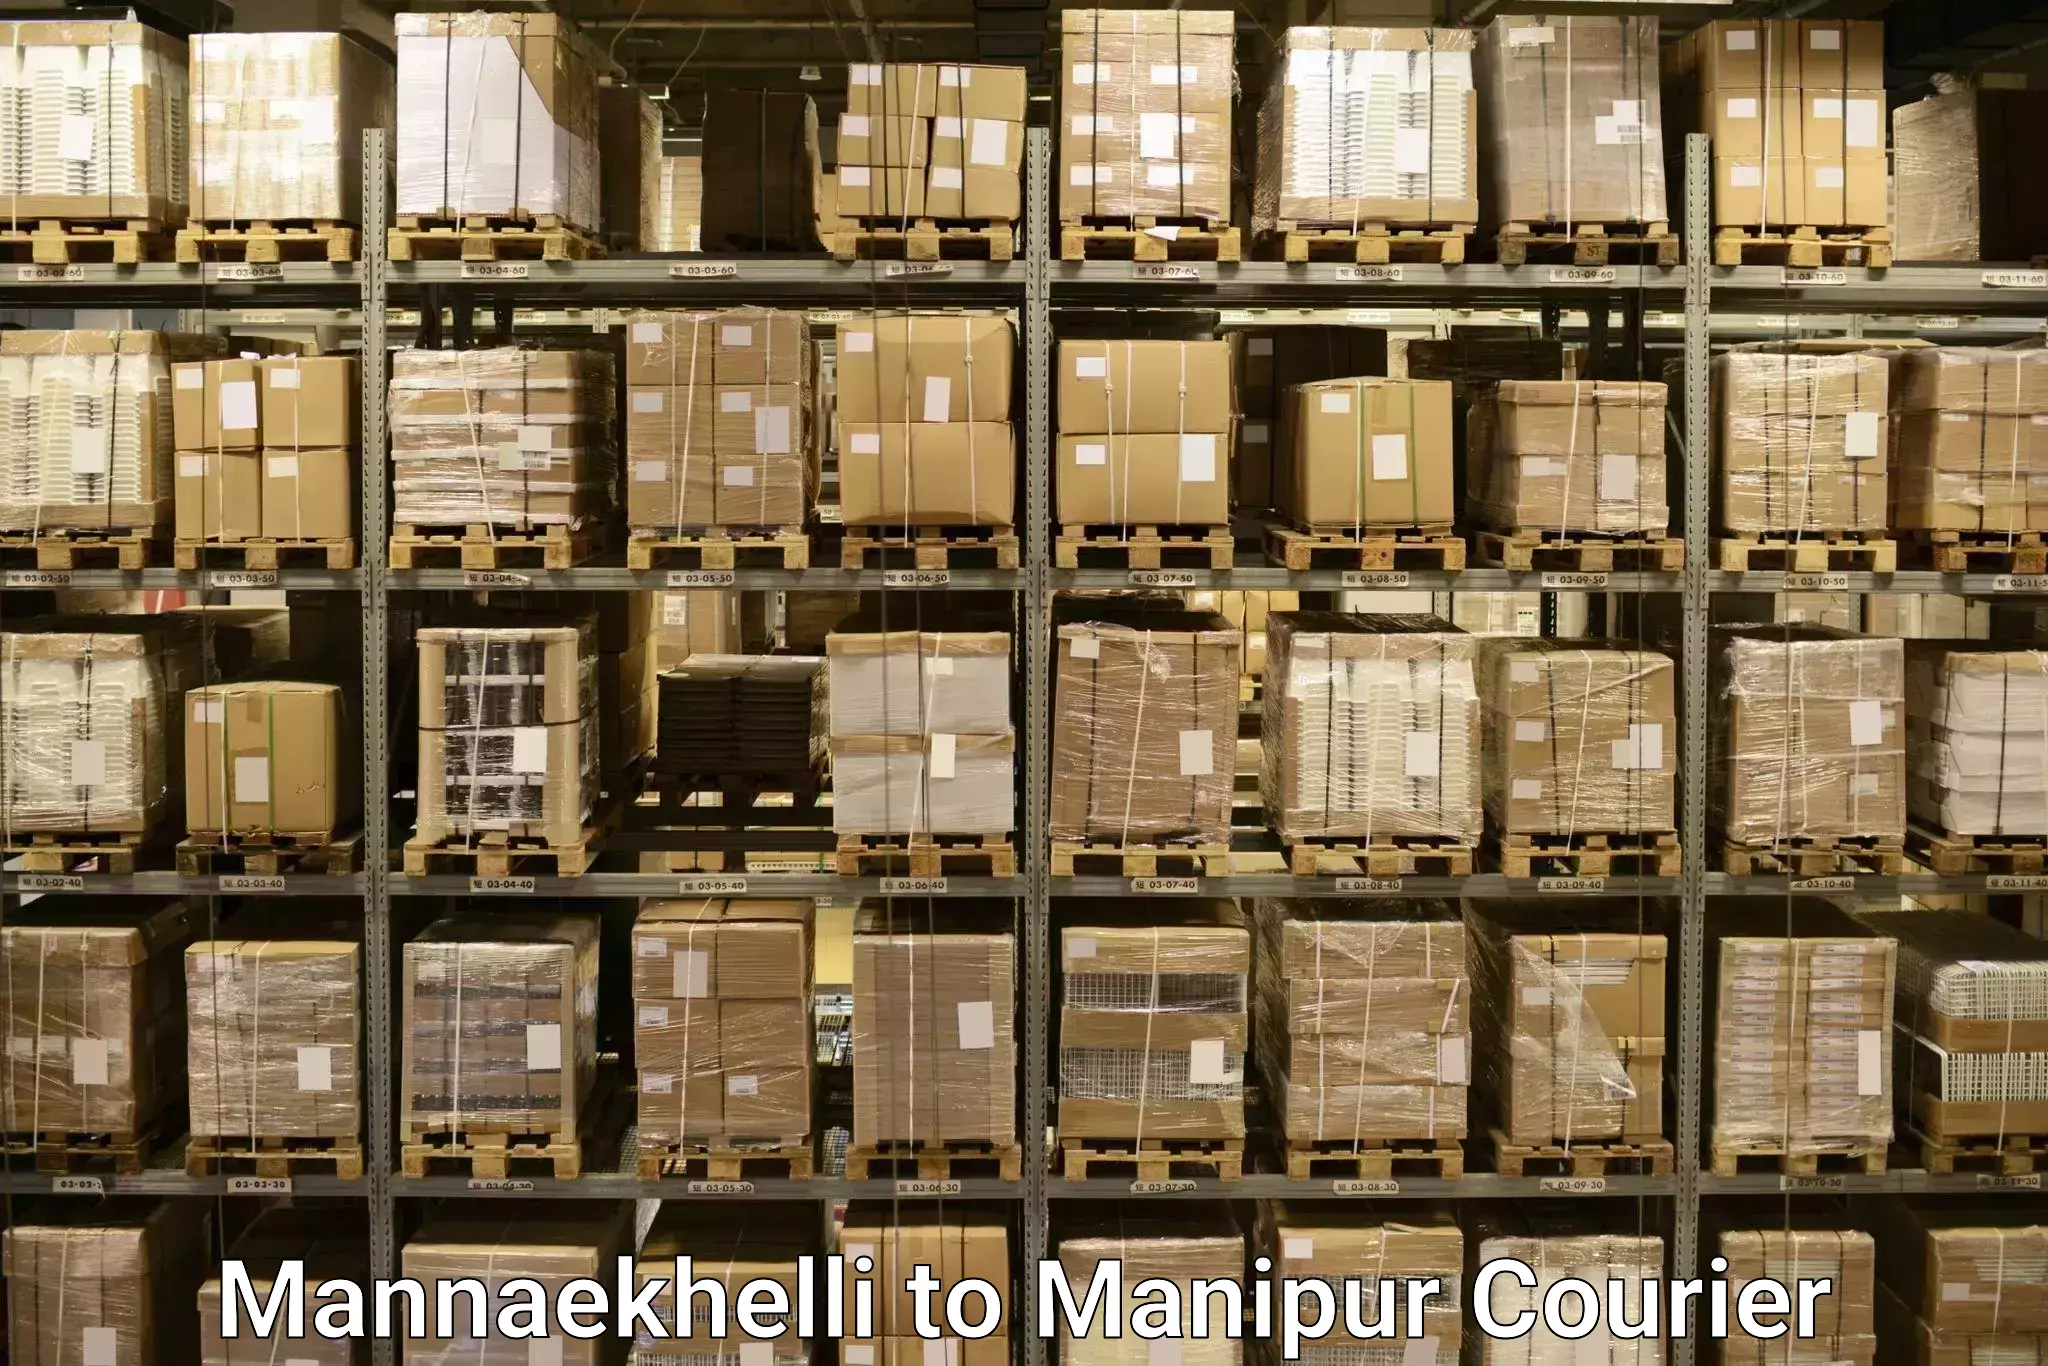 Automated luggage transport Mannaekhelli to Manipur